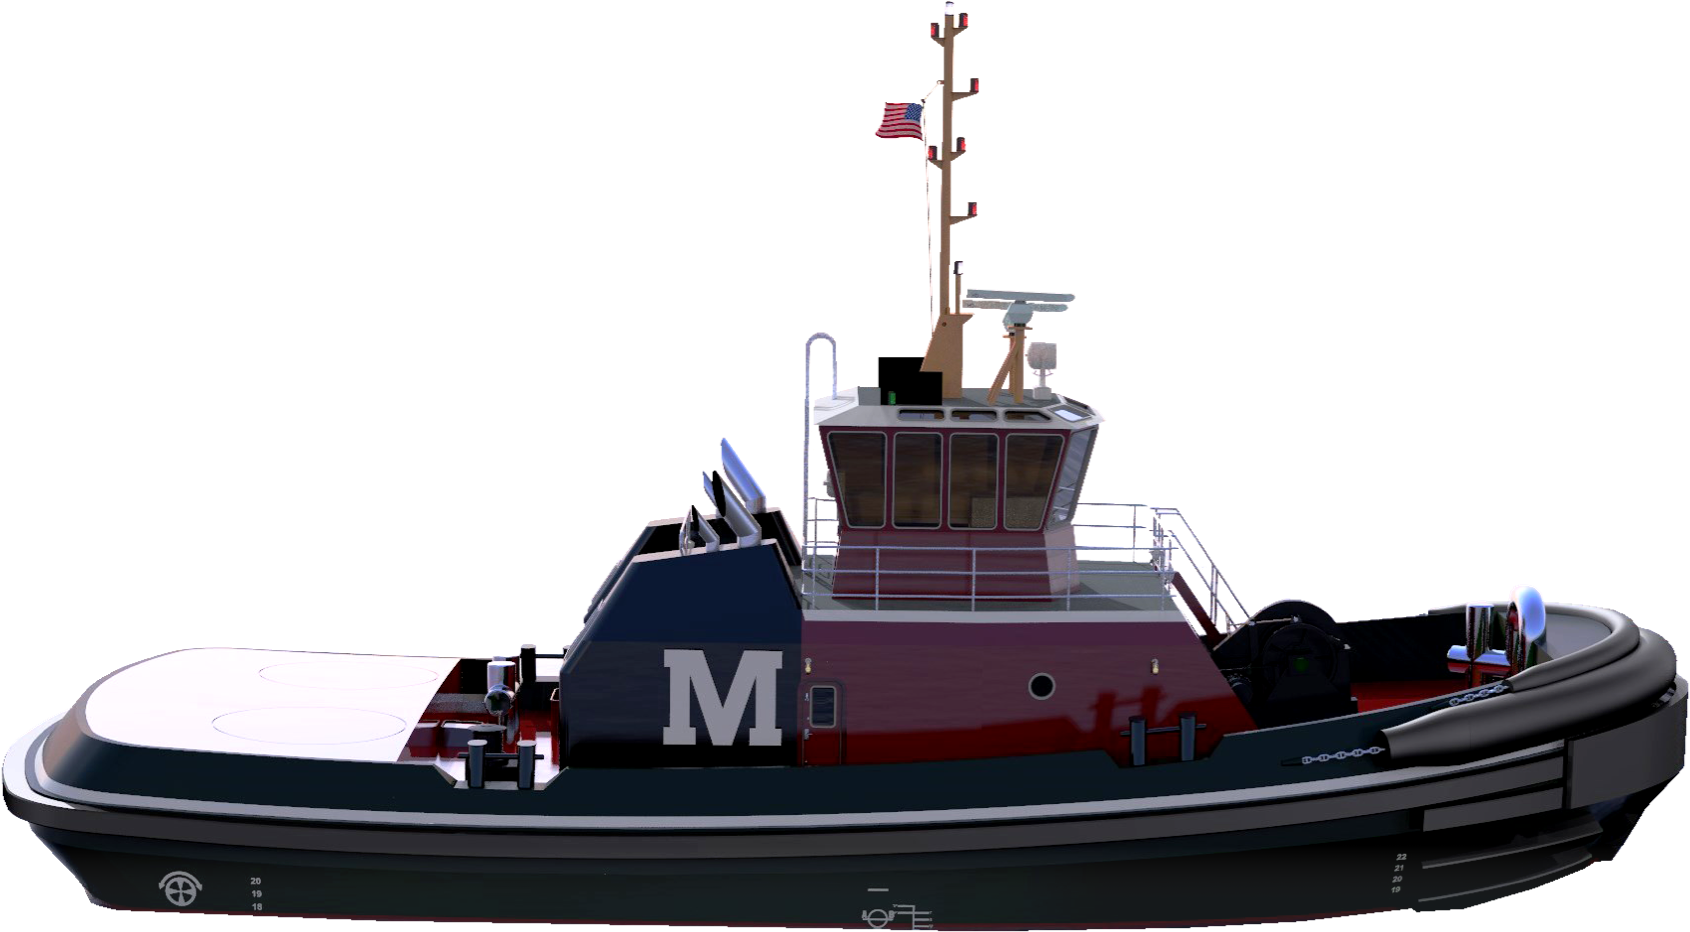 Moran Towing Tugboat